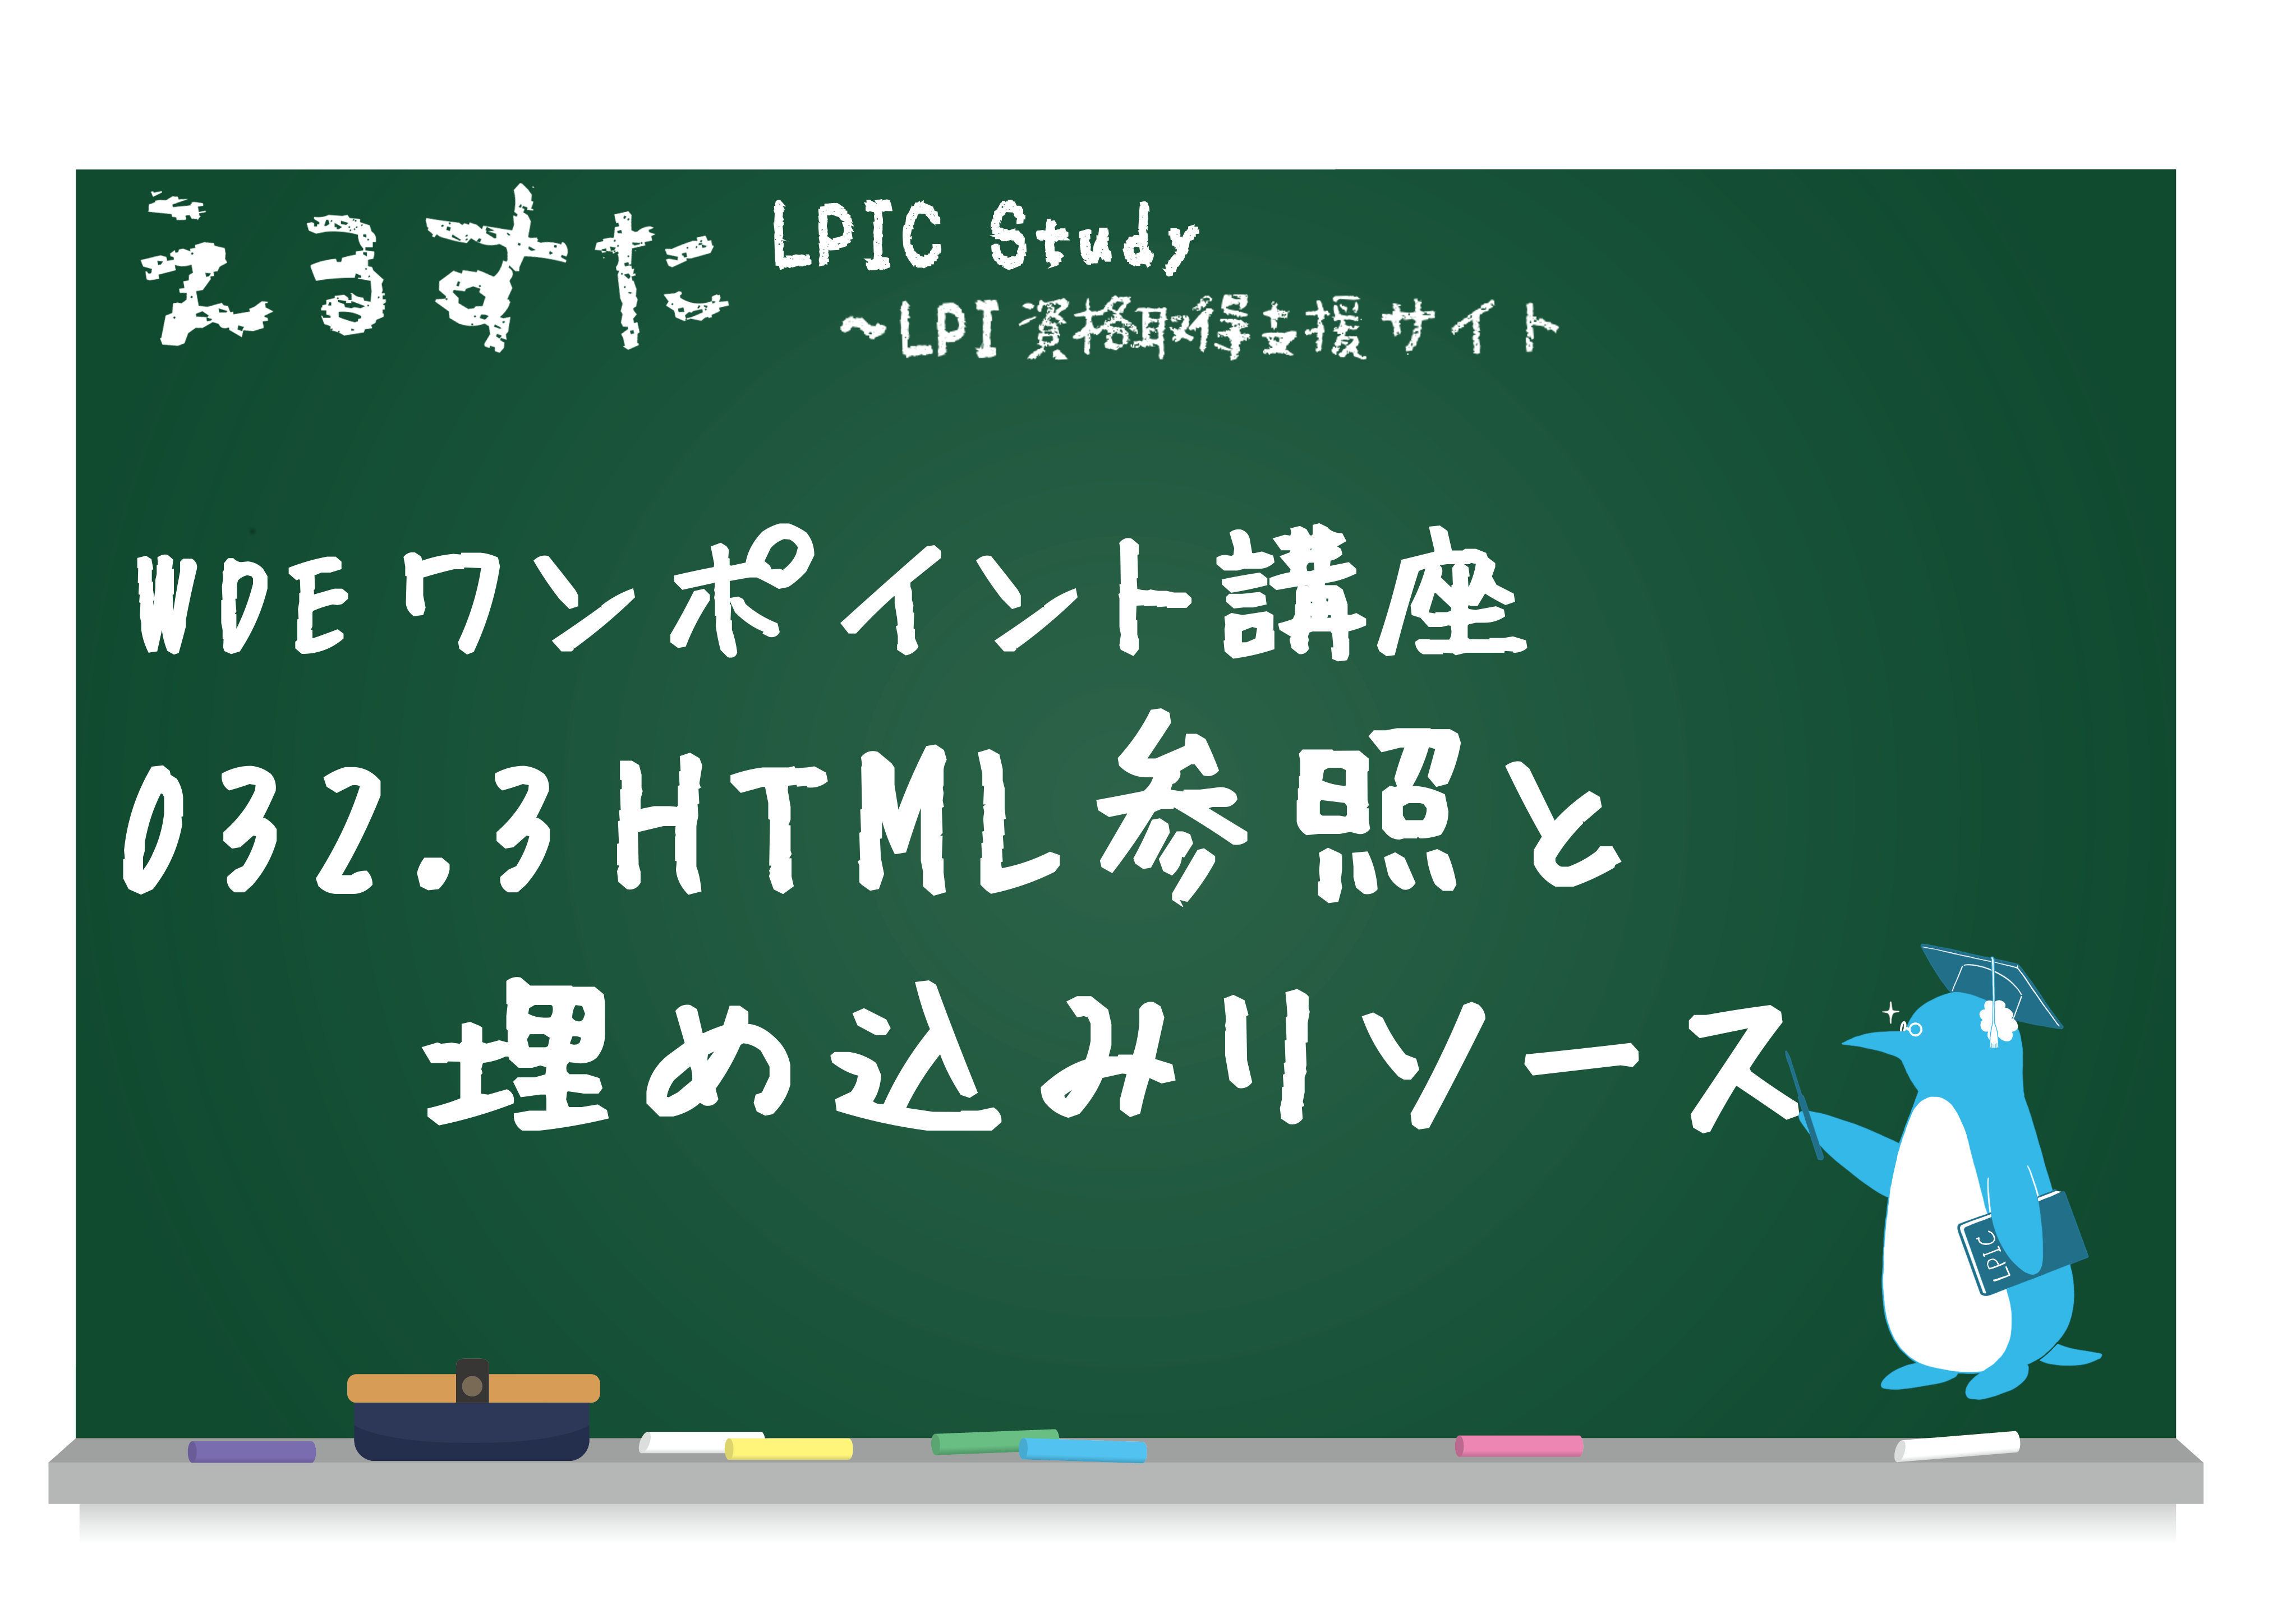 032.3 HTML 参照と埋め込みリソース